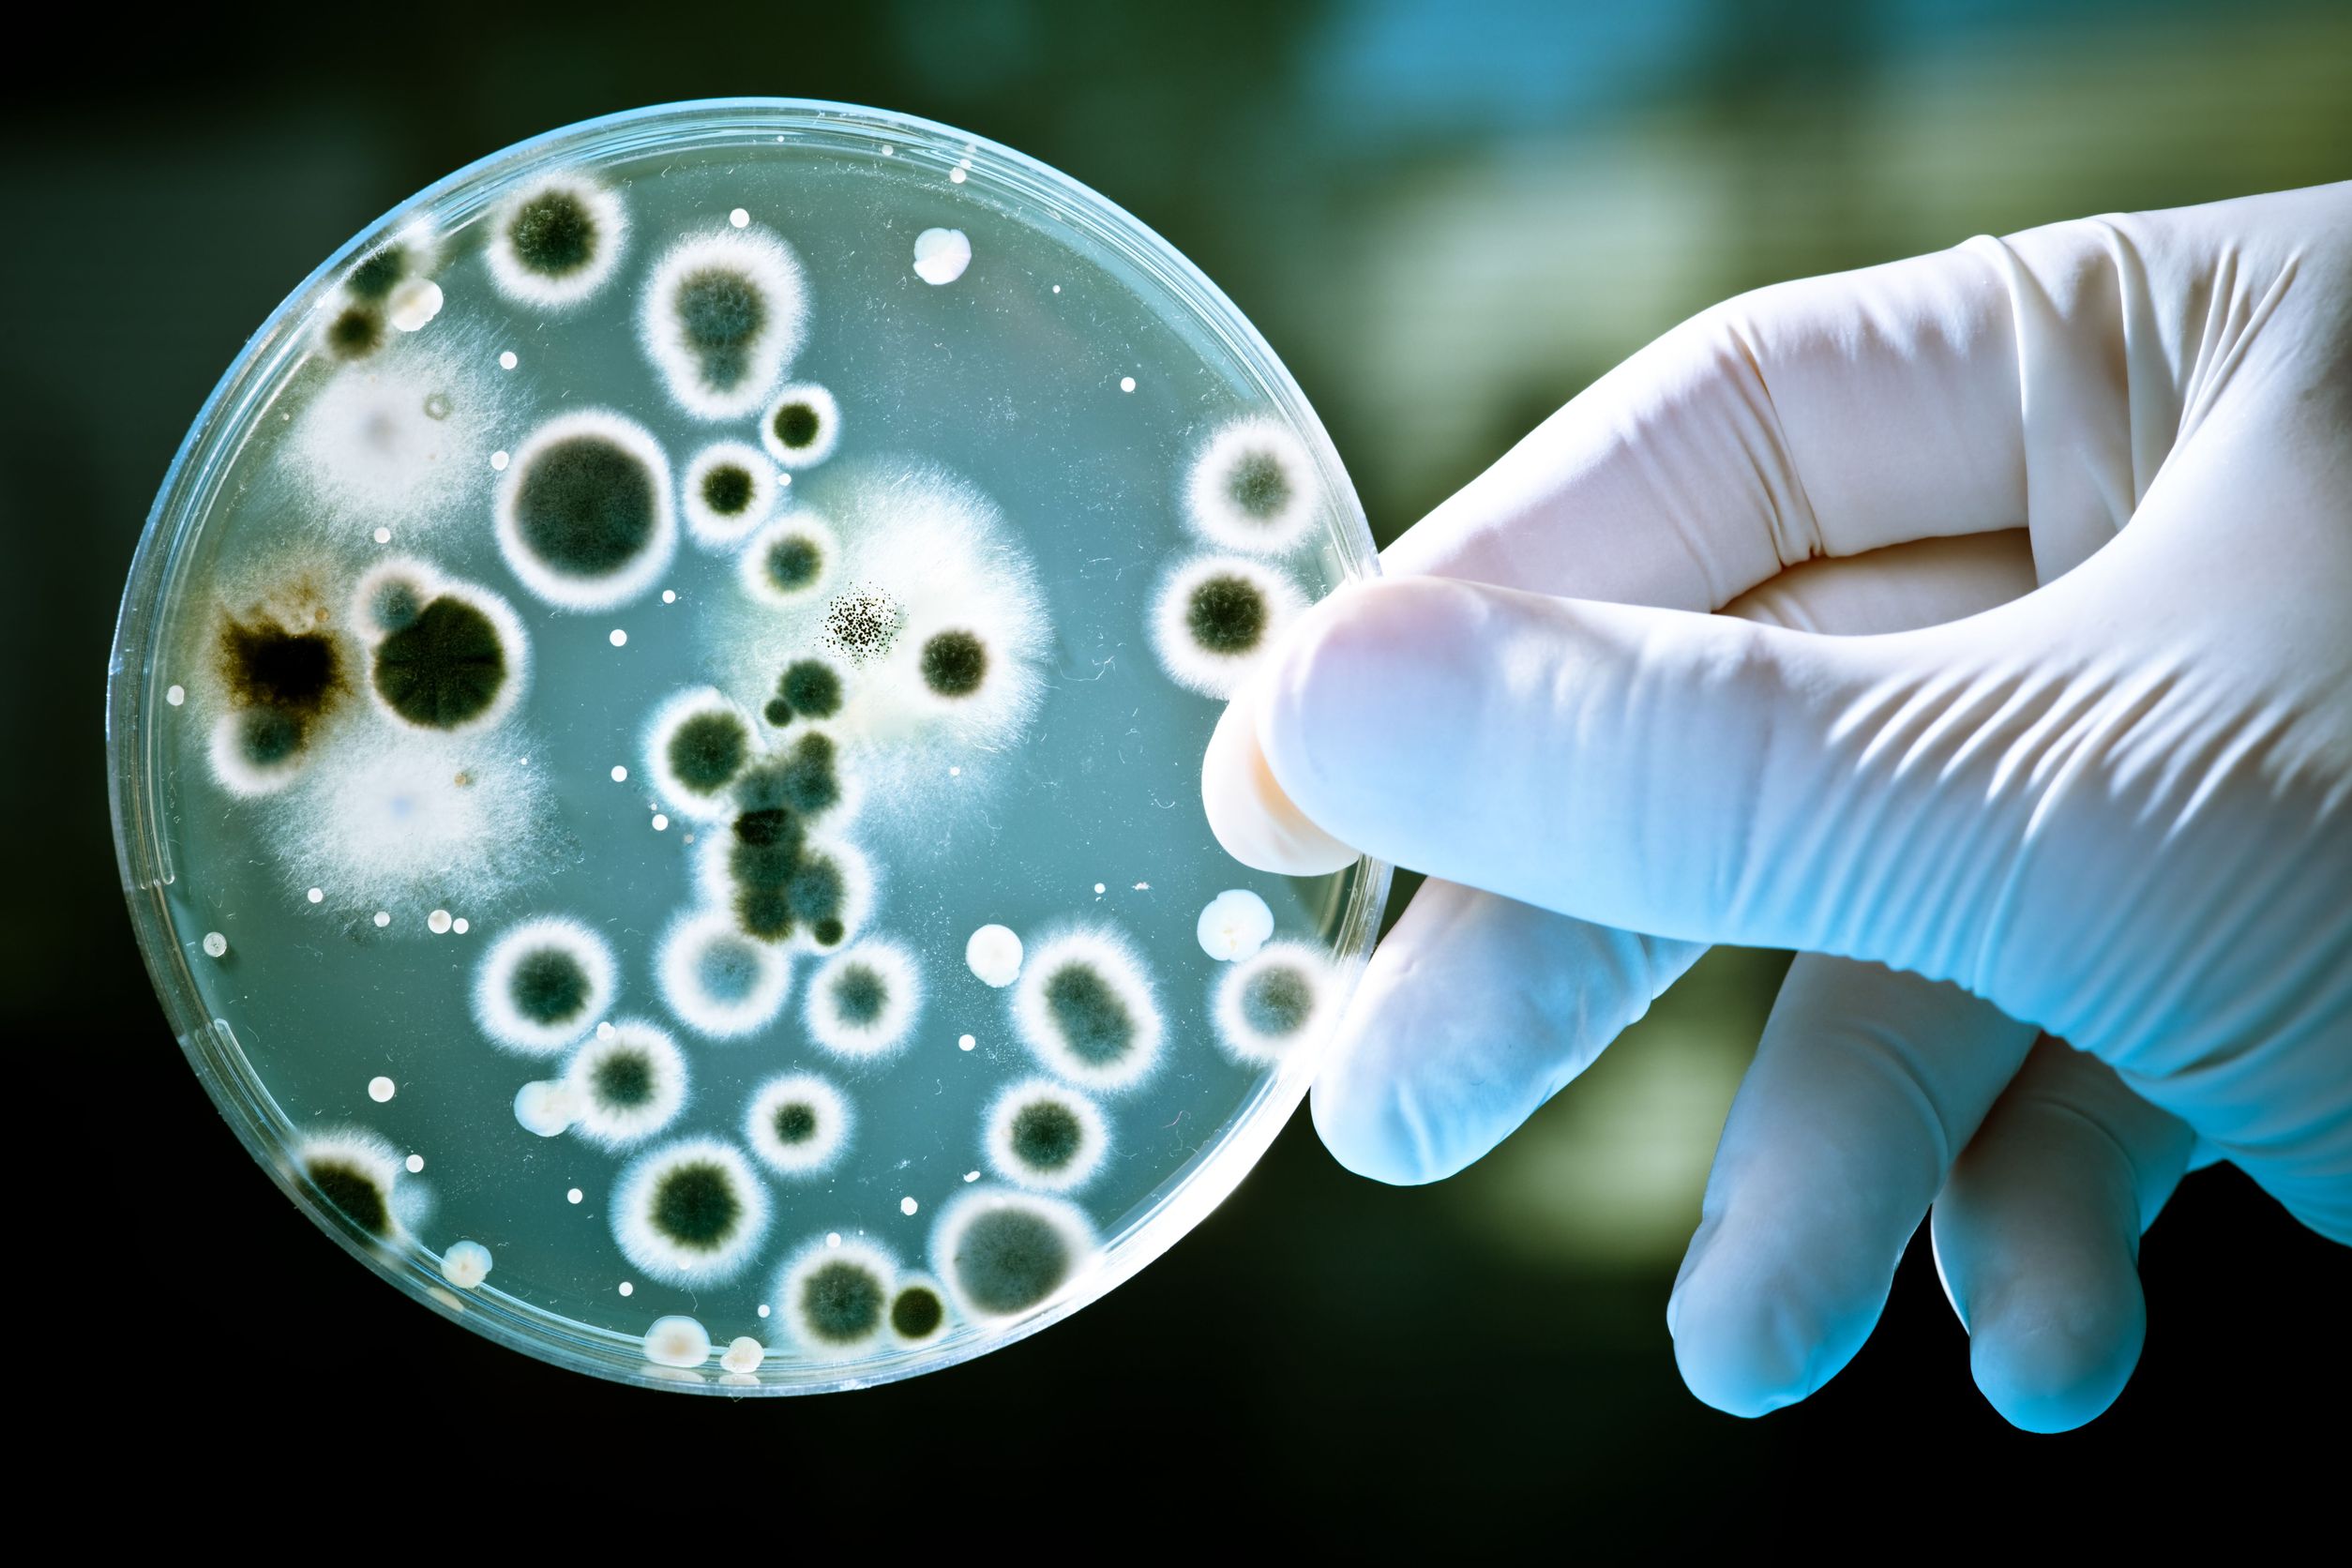 bactérias em uma placa de petri 